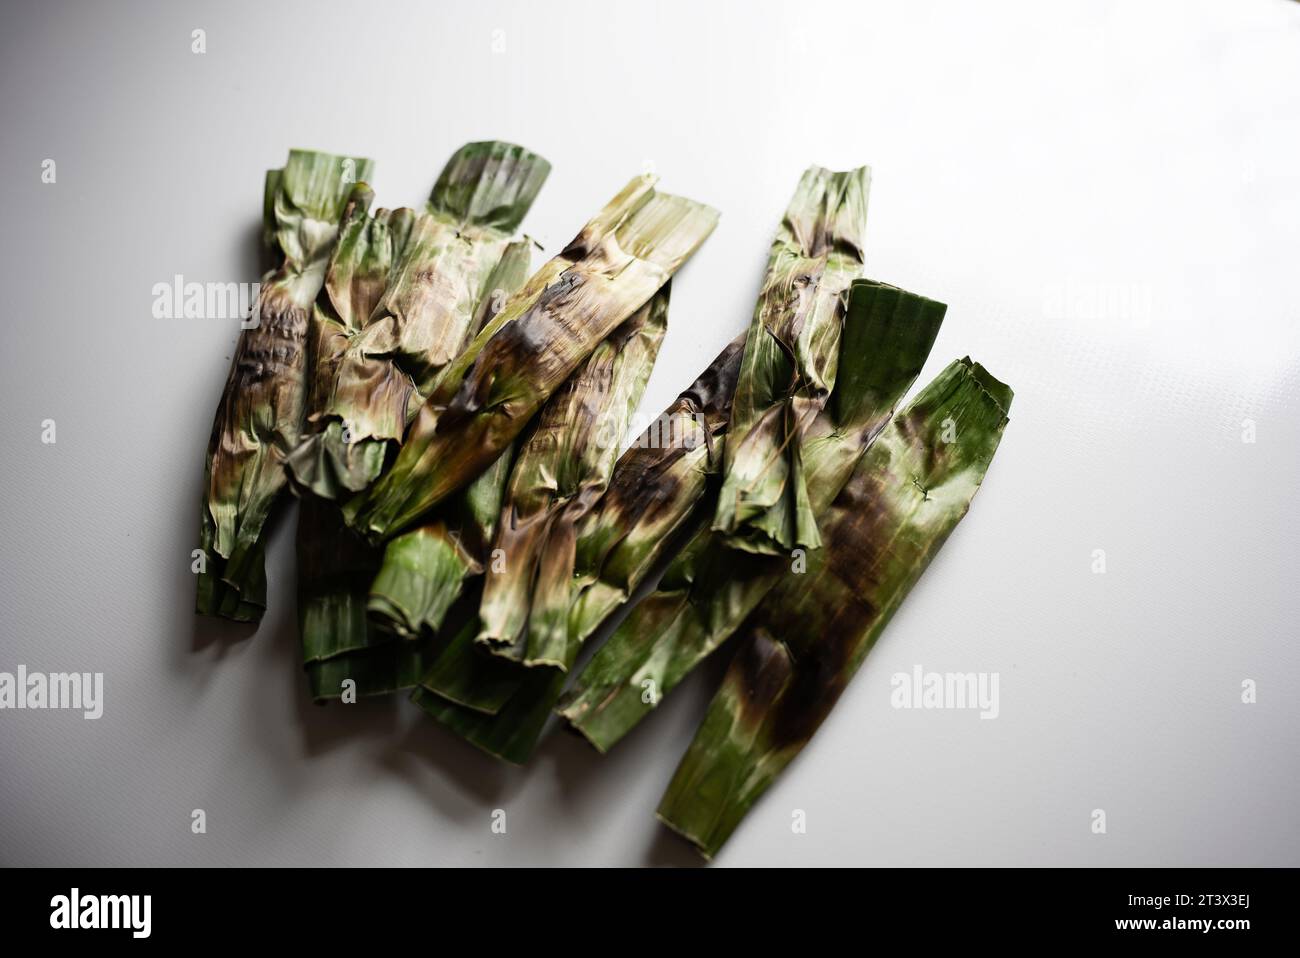 Otak-Otak: Traditionelle Speisen aus Indonesien sind eine Art Snack - gegrillte Fischkuchen mit Bananenblatt Stockfoto